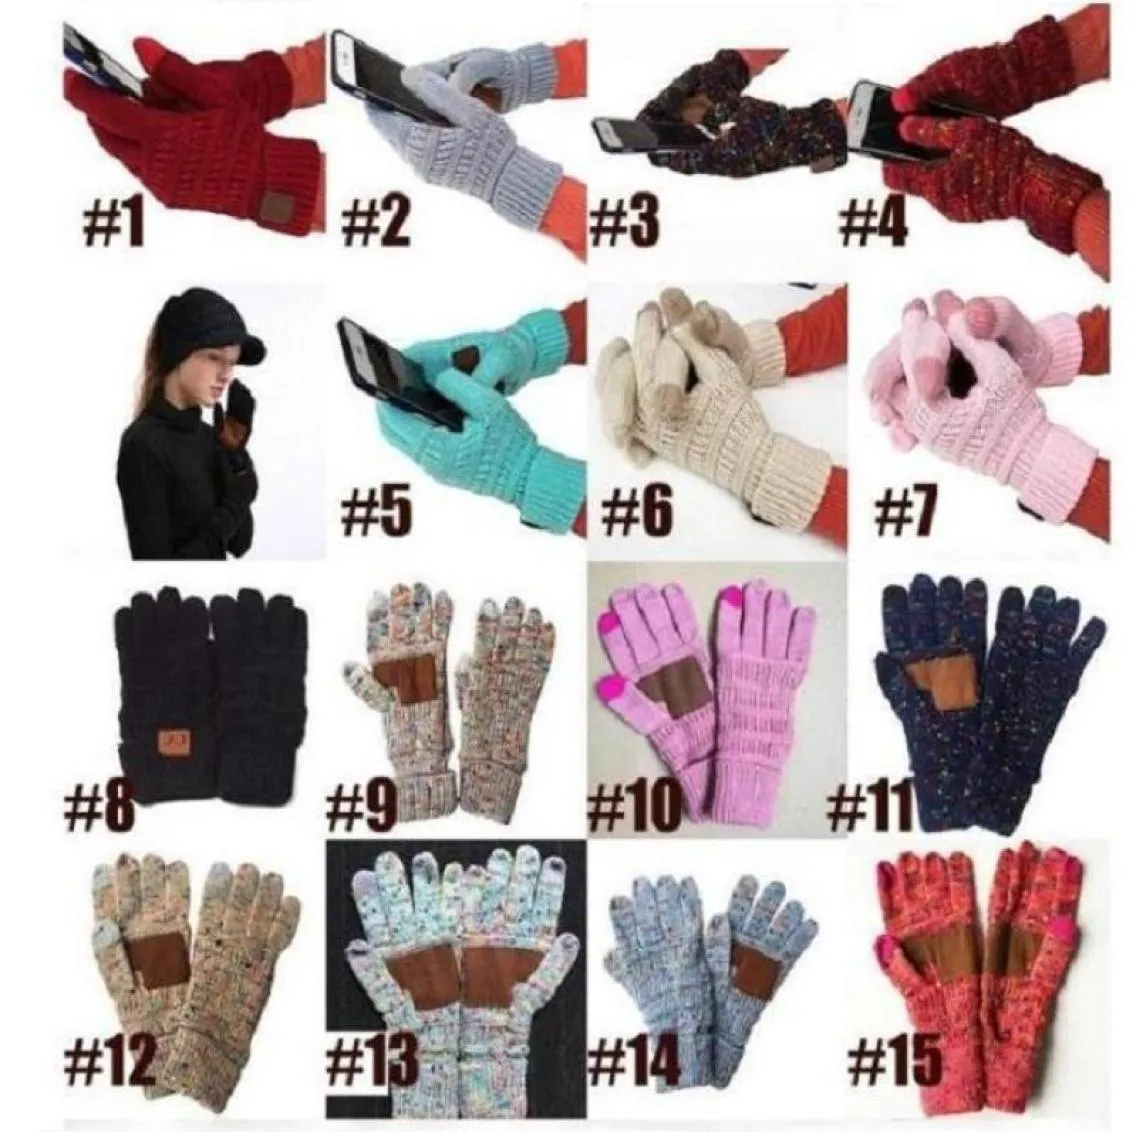 Supplies de jardin cc gant tactile gant gants capacitifs cc femmes gants en laine chaude hivernale